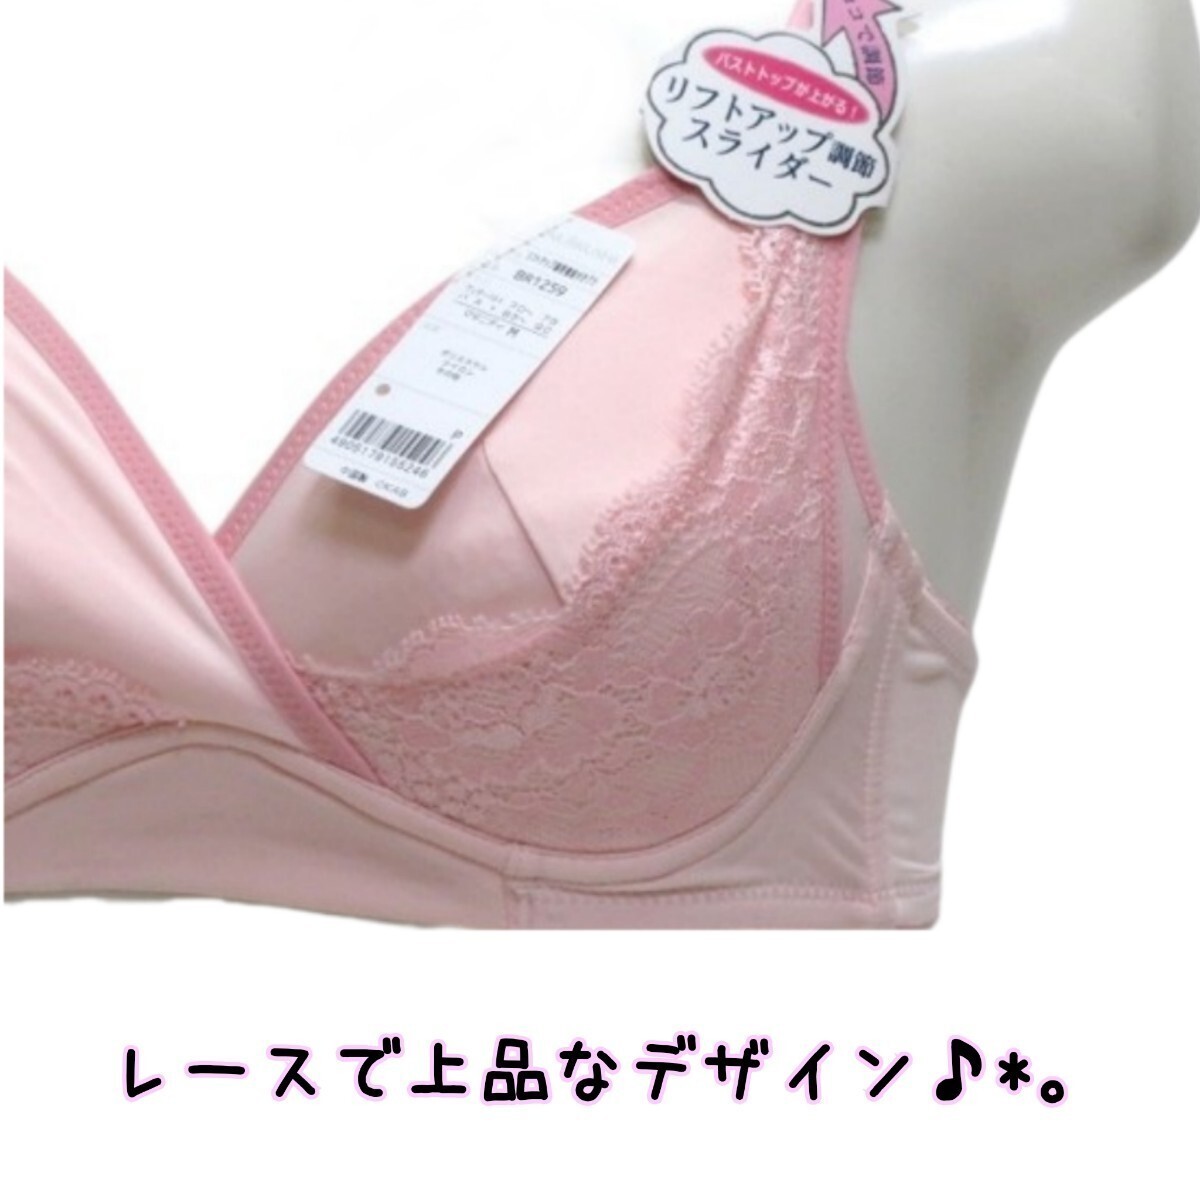 【300】犬印本舗 イヌジルシ リフトアップ マタニティブラ ピンク セット M ブラ ブラジャー 授乳_画像3